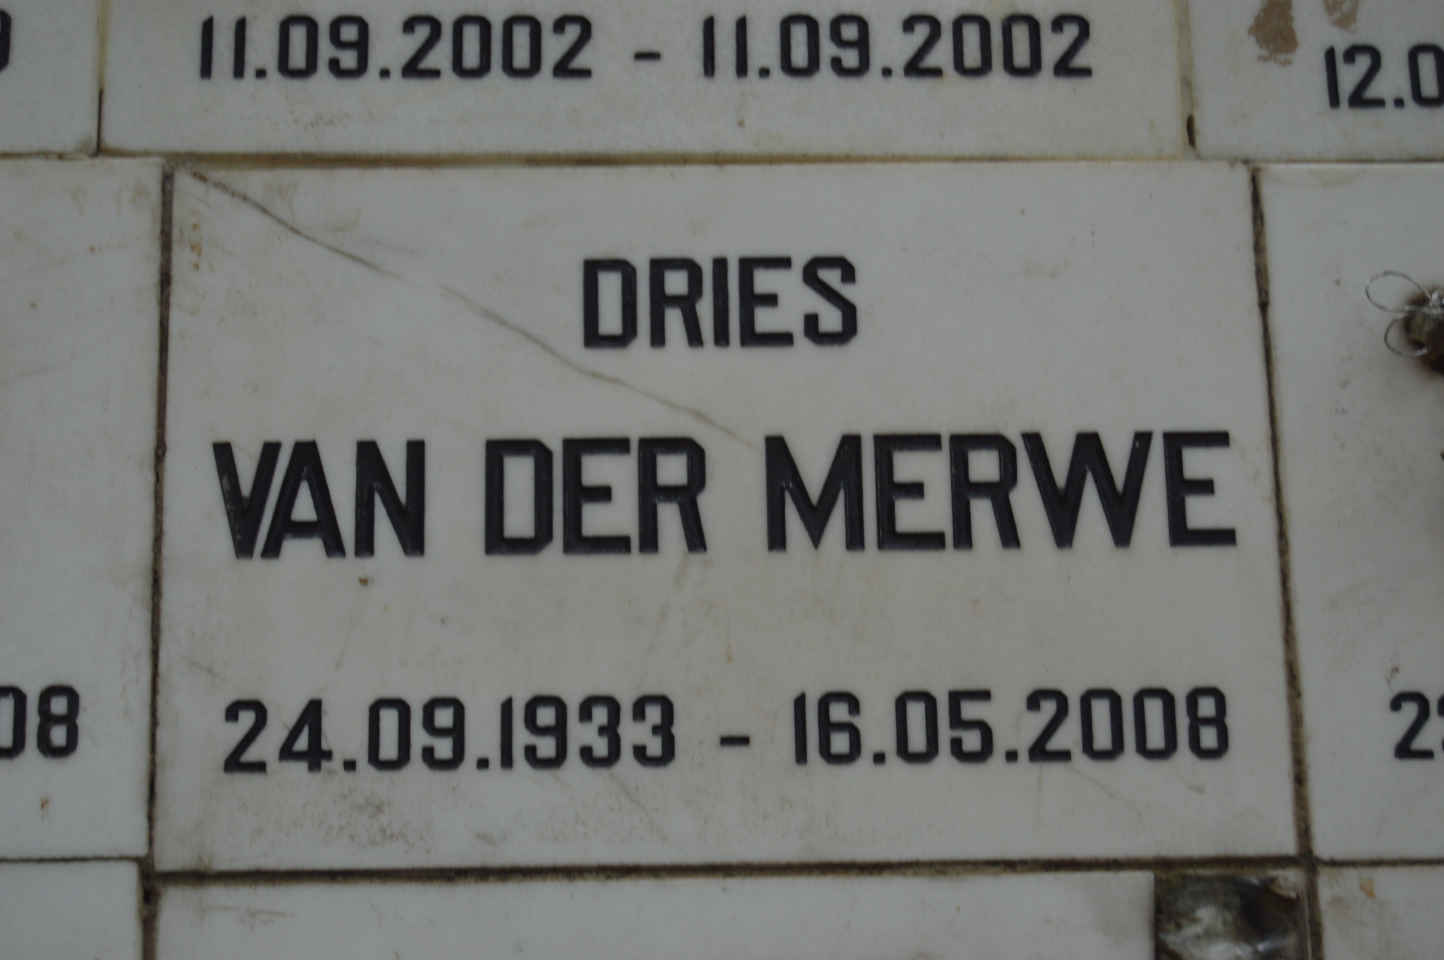 MERWE Dries, van der 1933-2008